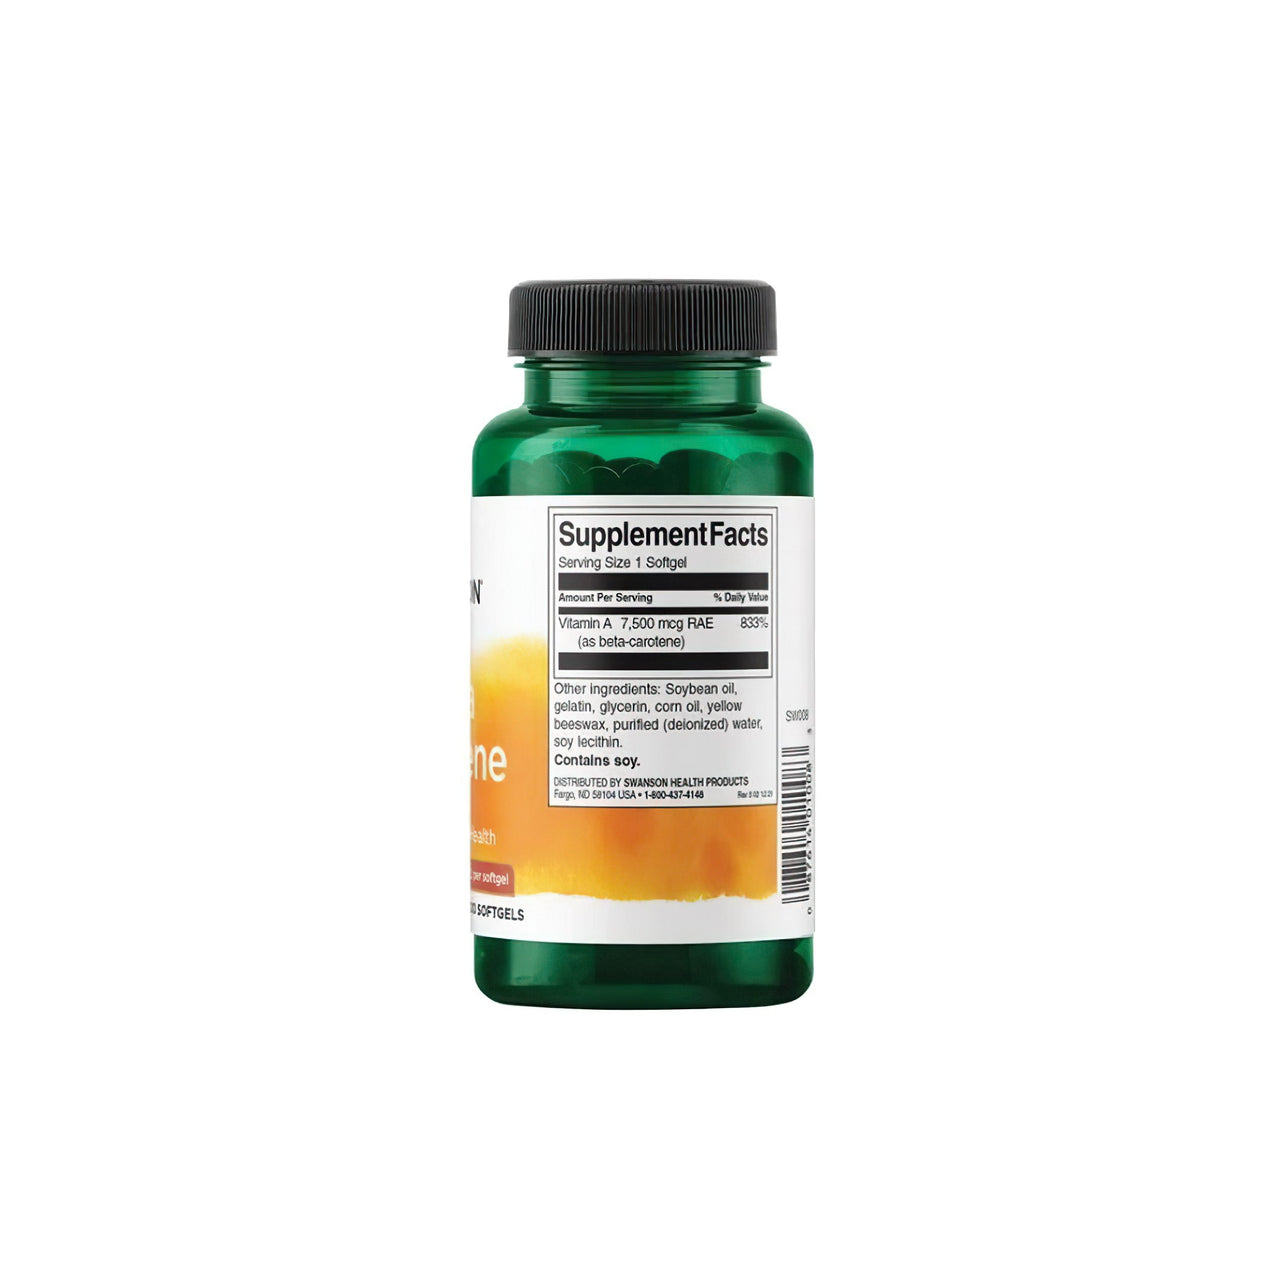 Une bouteille de complément alimentaire de Swanson Beta-Carotene - 25000 IU 300 softgels Vitamin A sur un fond blanc.